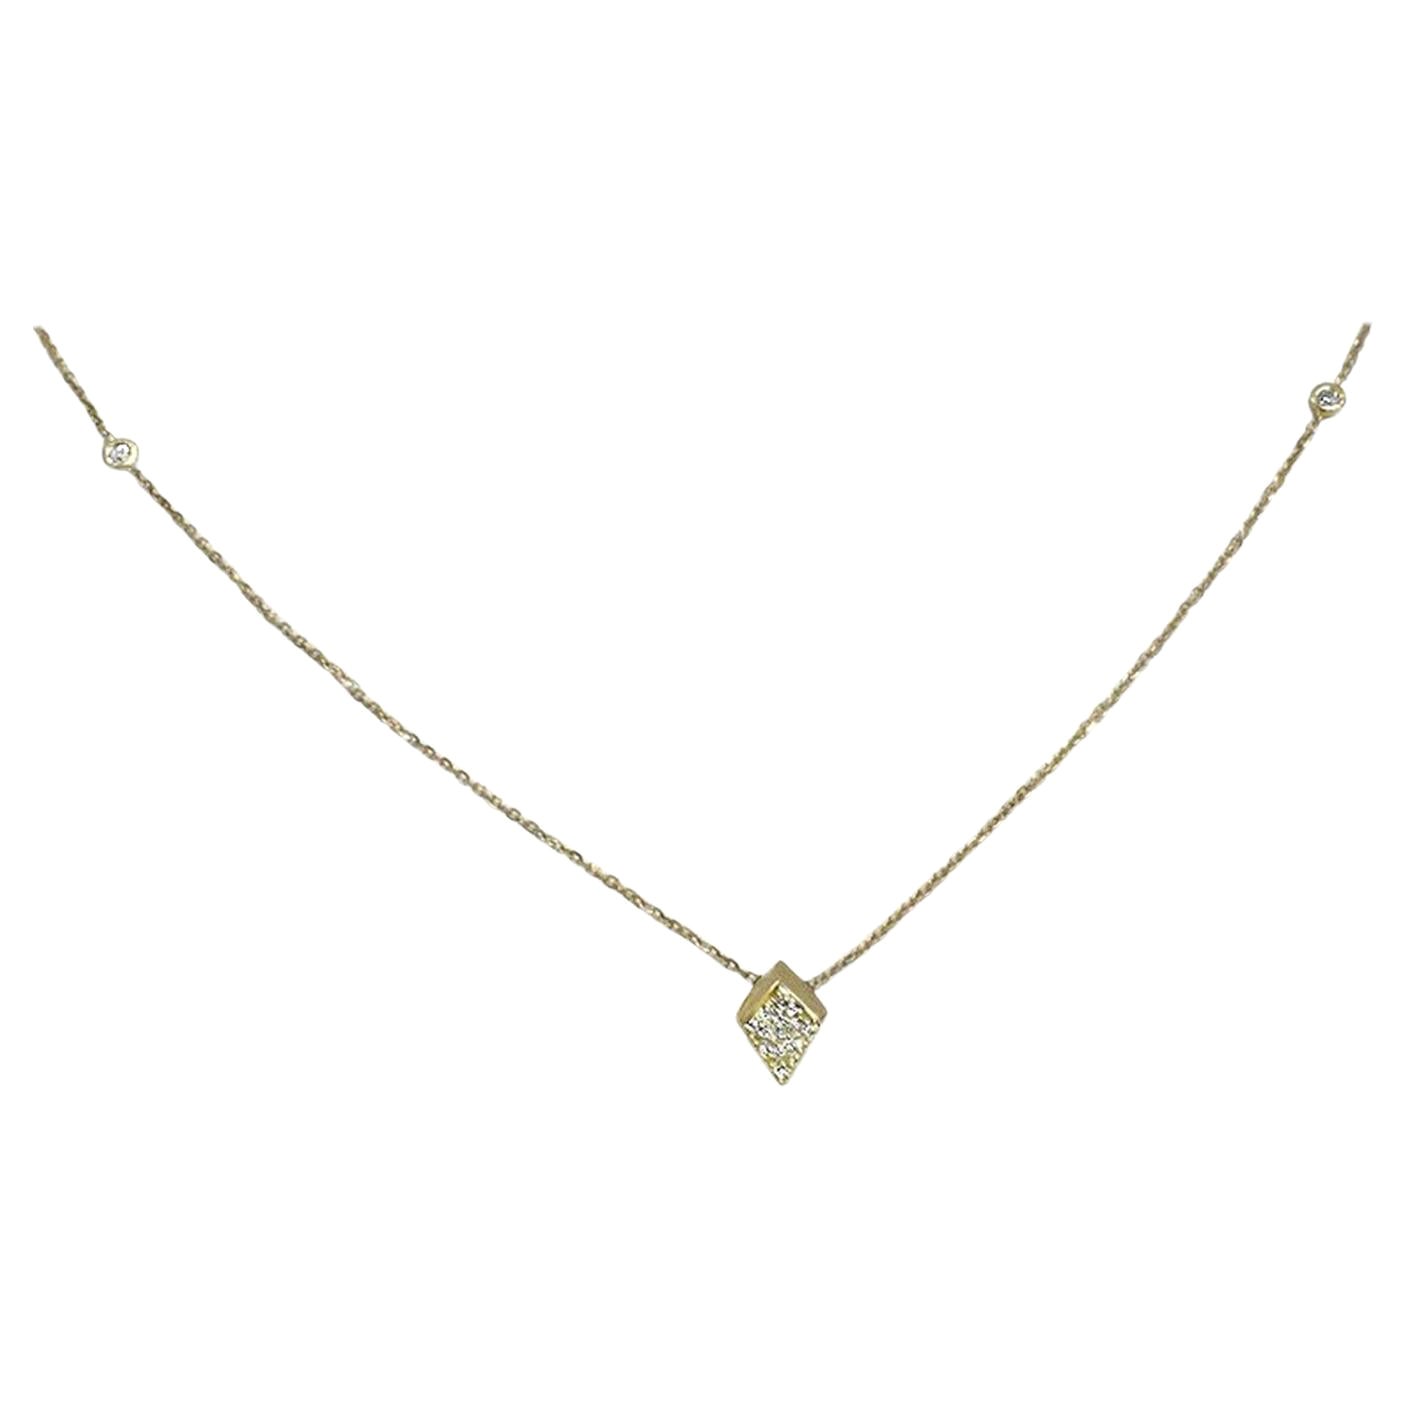 Collier à breloques minimaliste en or massif 14 carats avec breloque en forme de flèche